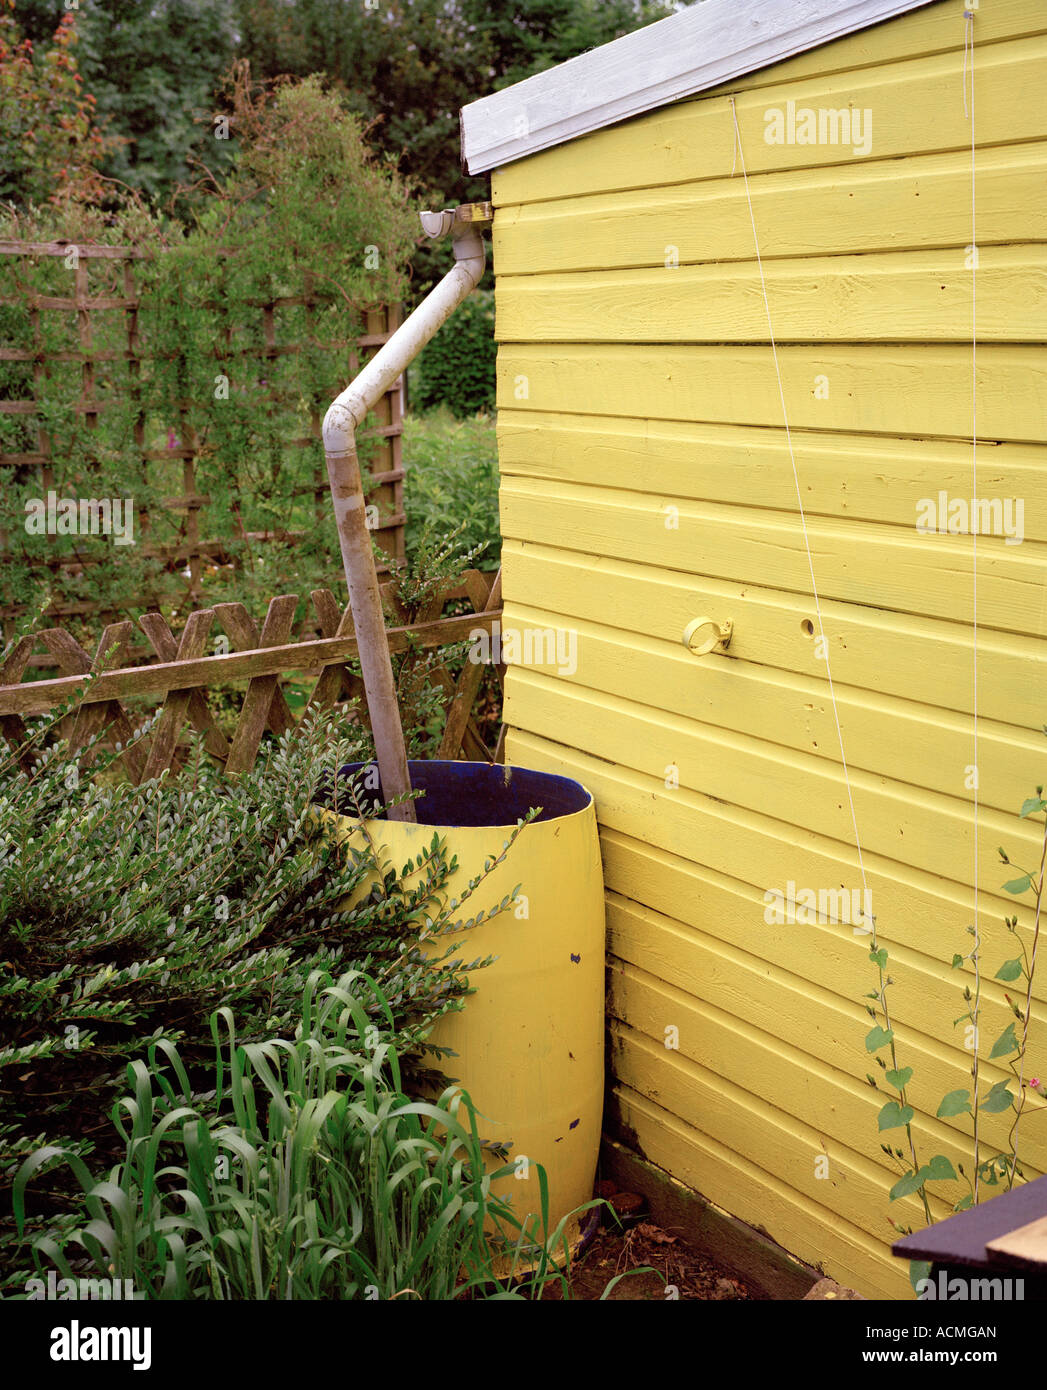 Regentonne, befestigt an einem gelben Gartenhaus Stockfotografie - Alamy